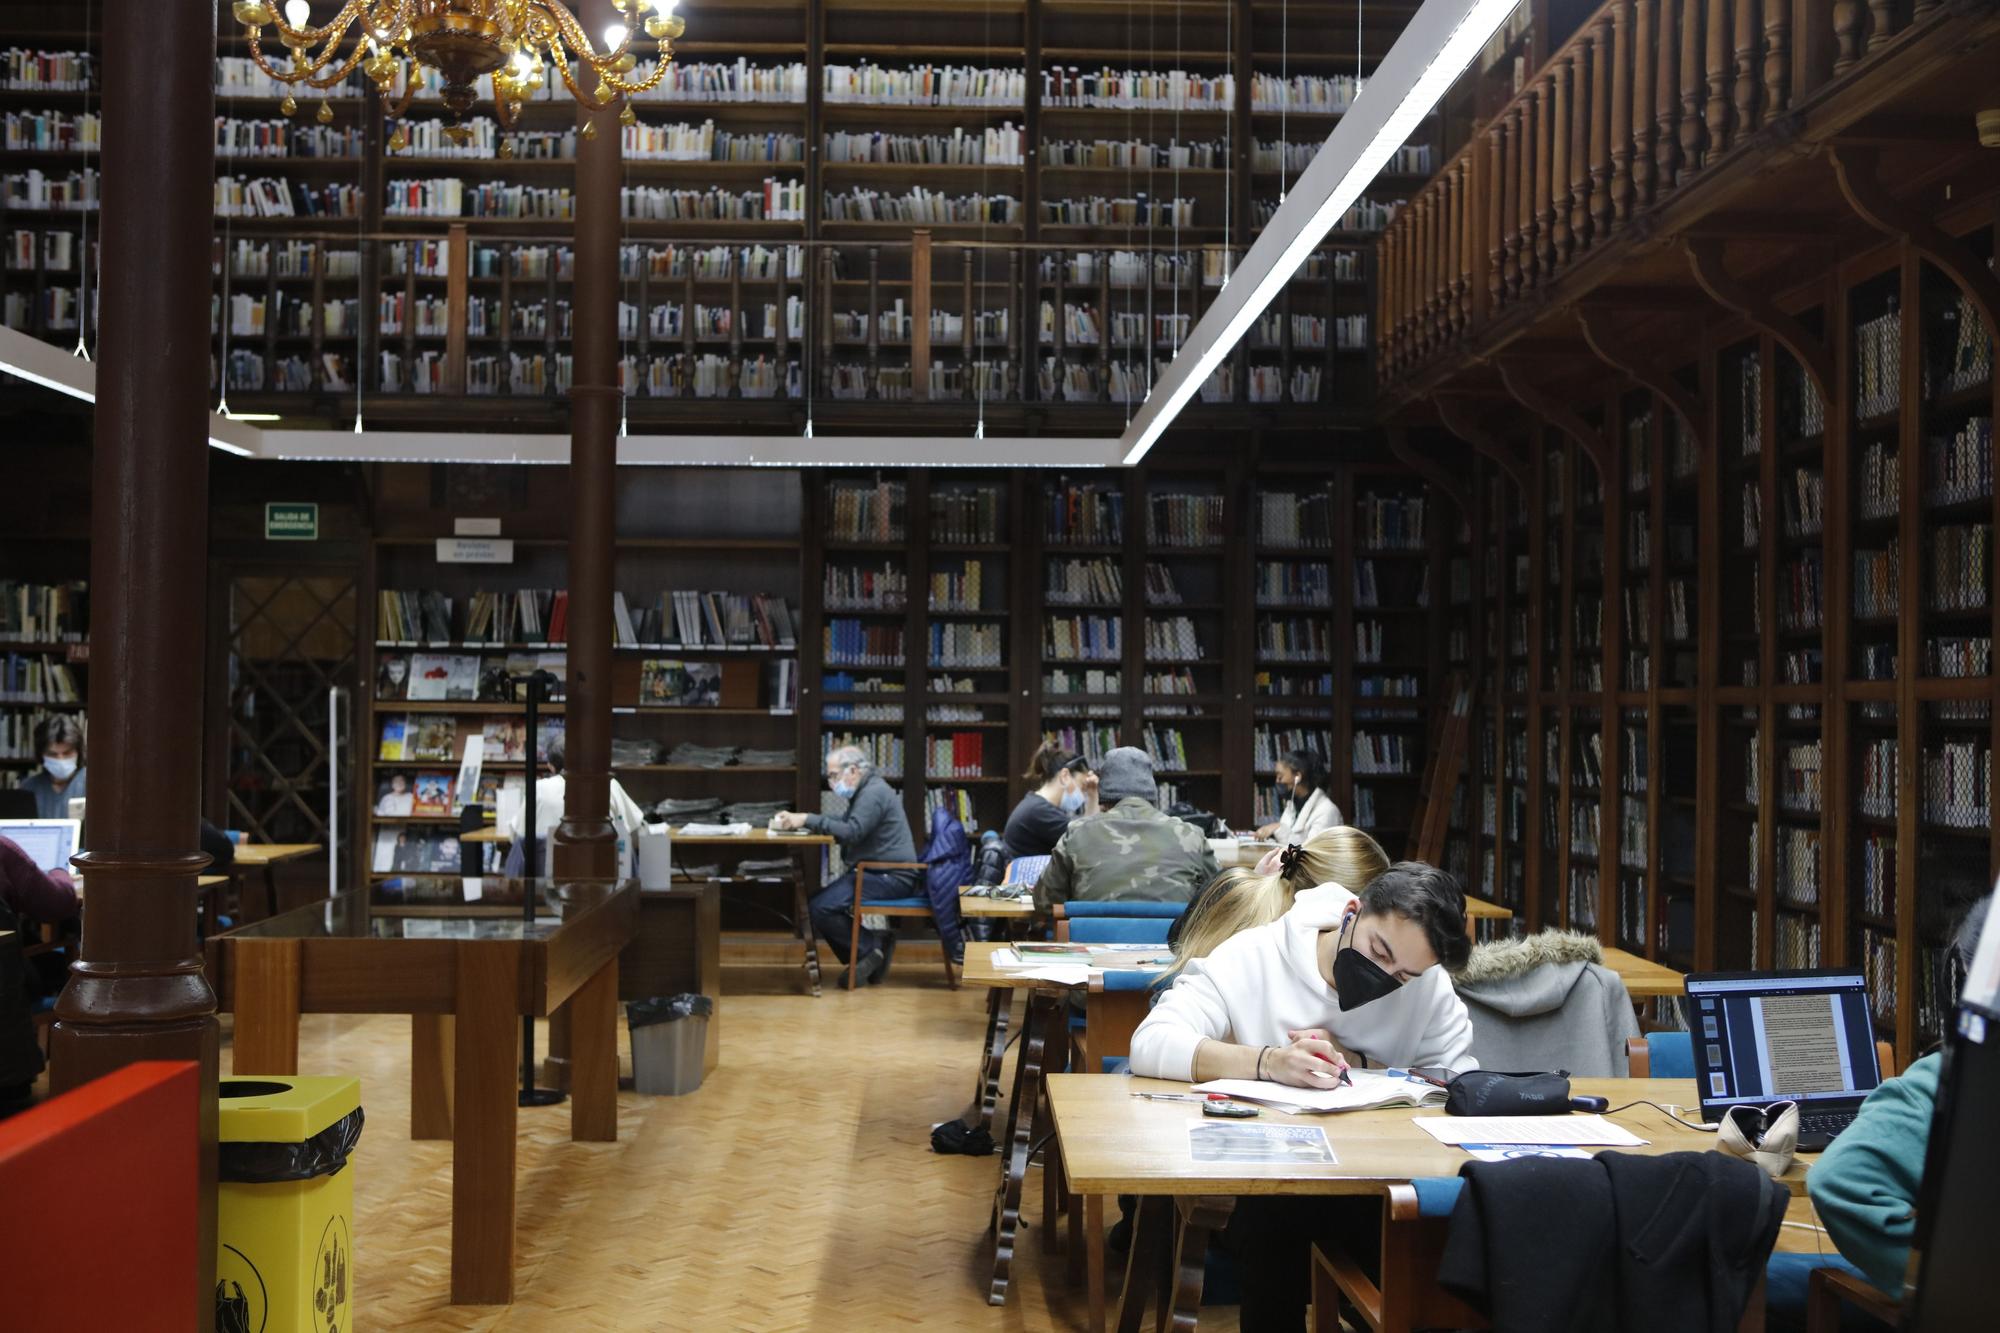 In der Biblioteca de Cort lernen Studenten, während Rentner in der Tageszeitung blättern.